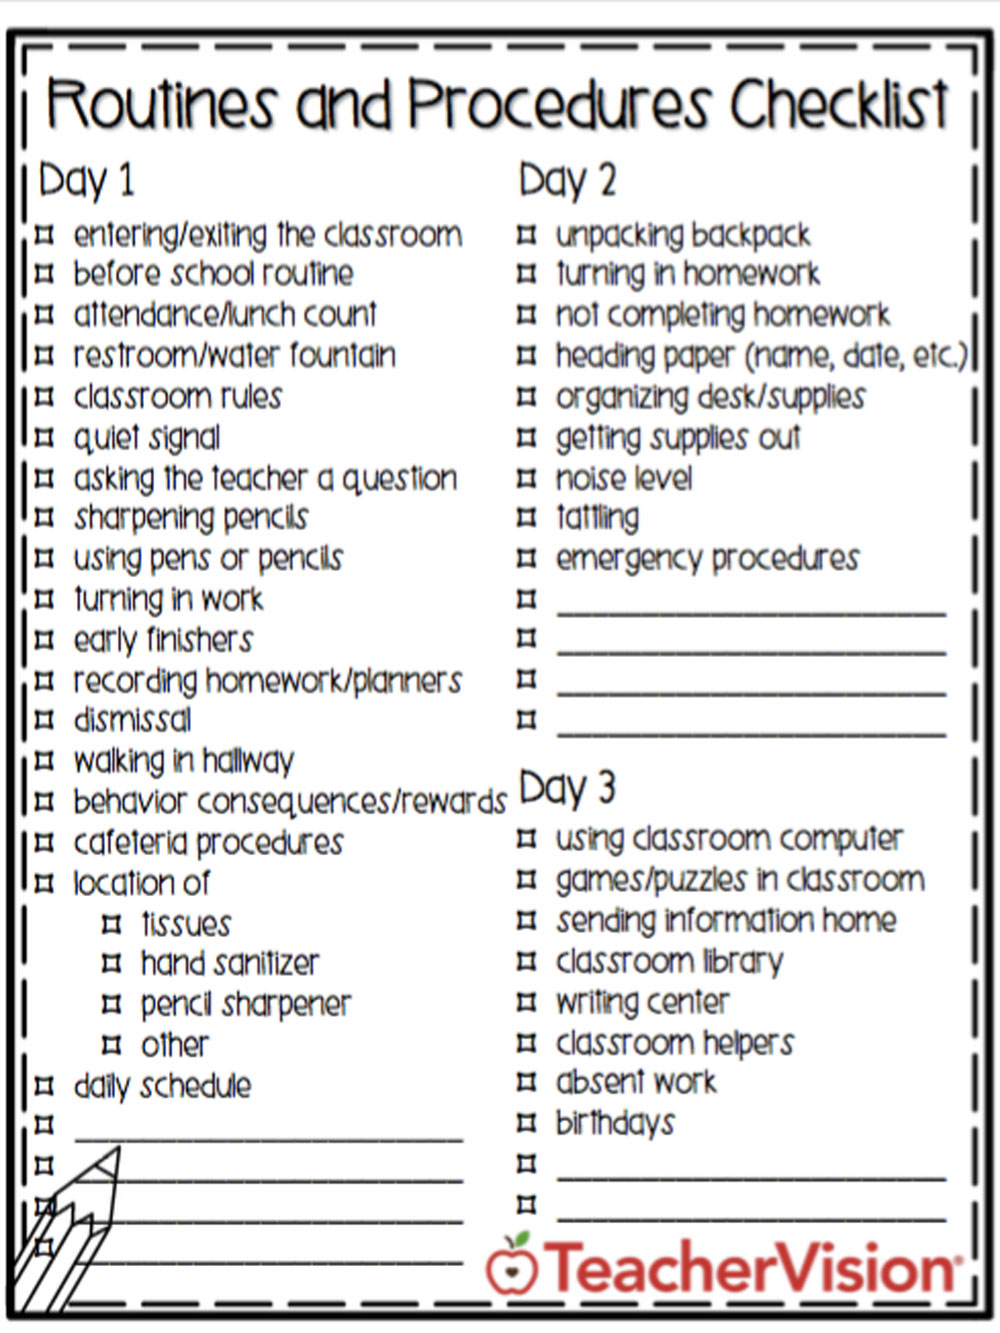 Printable Classroom Forms For Teachers TeacherVision